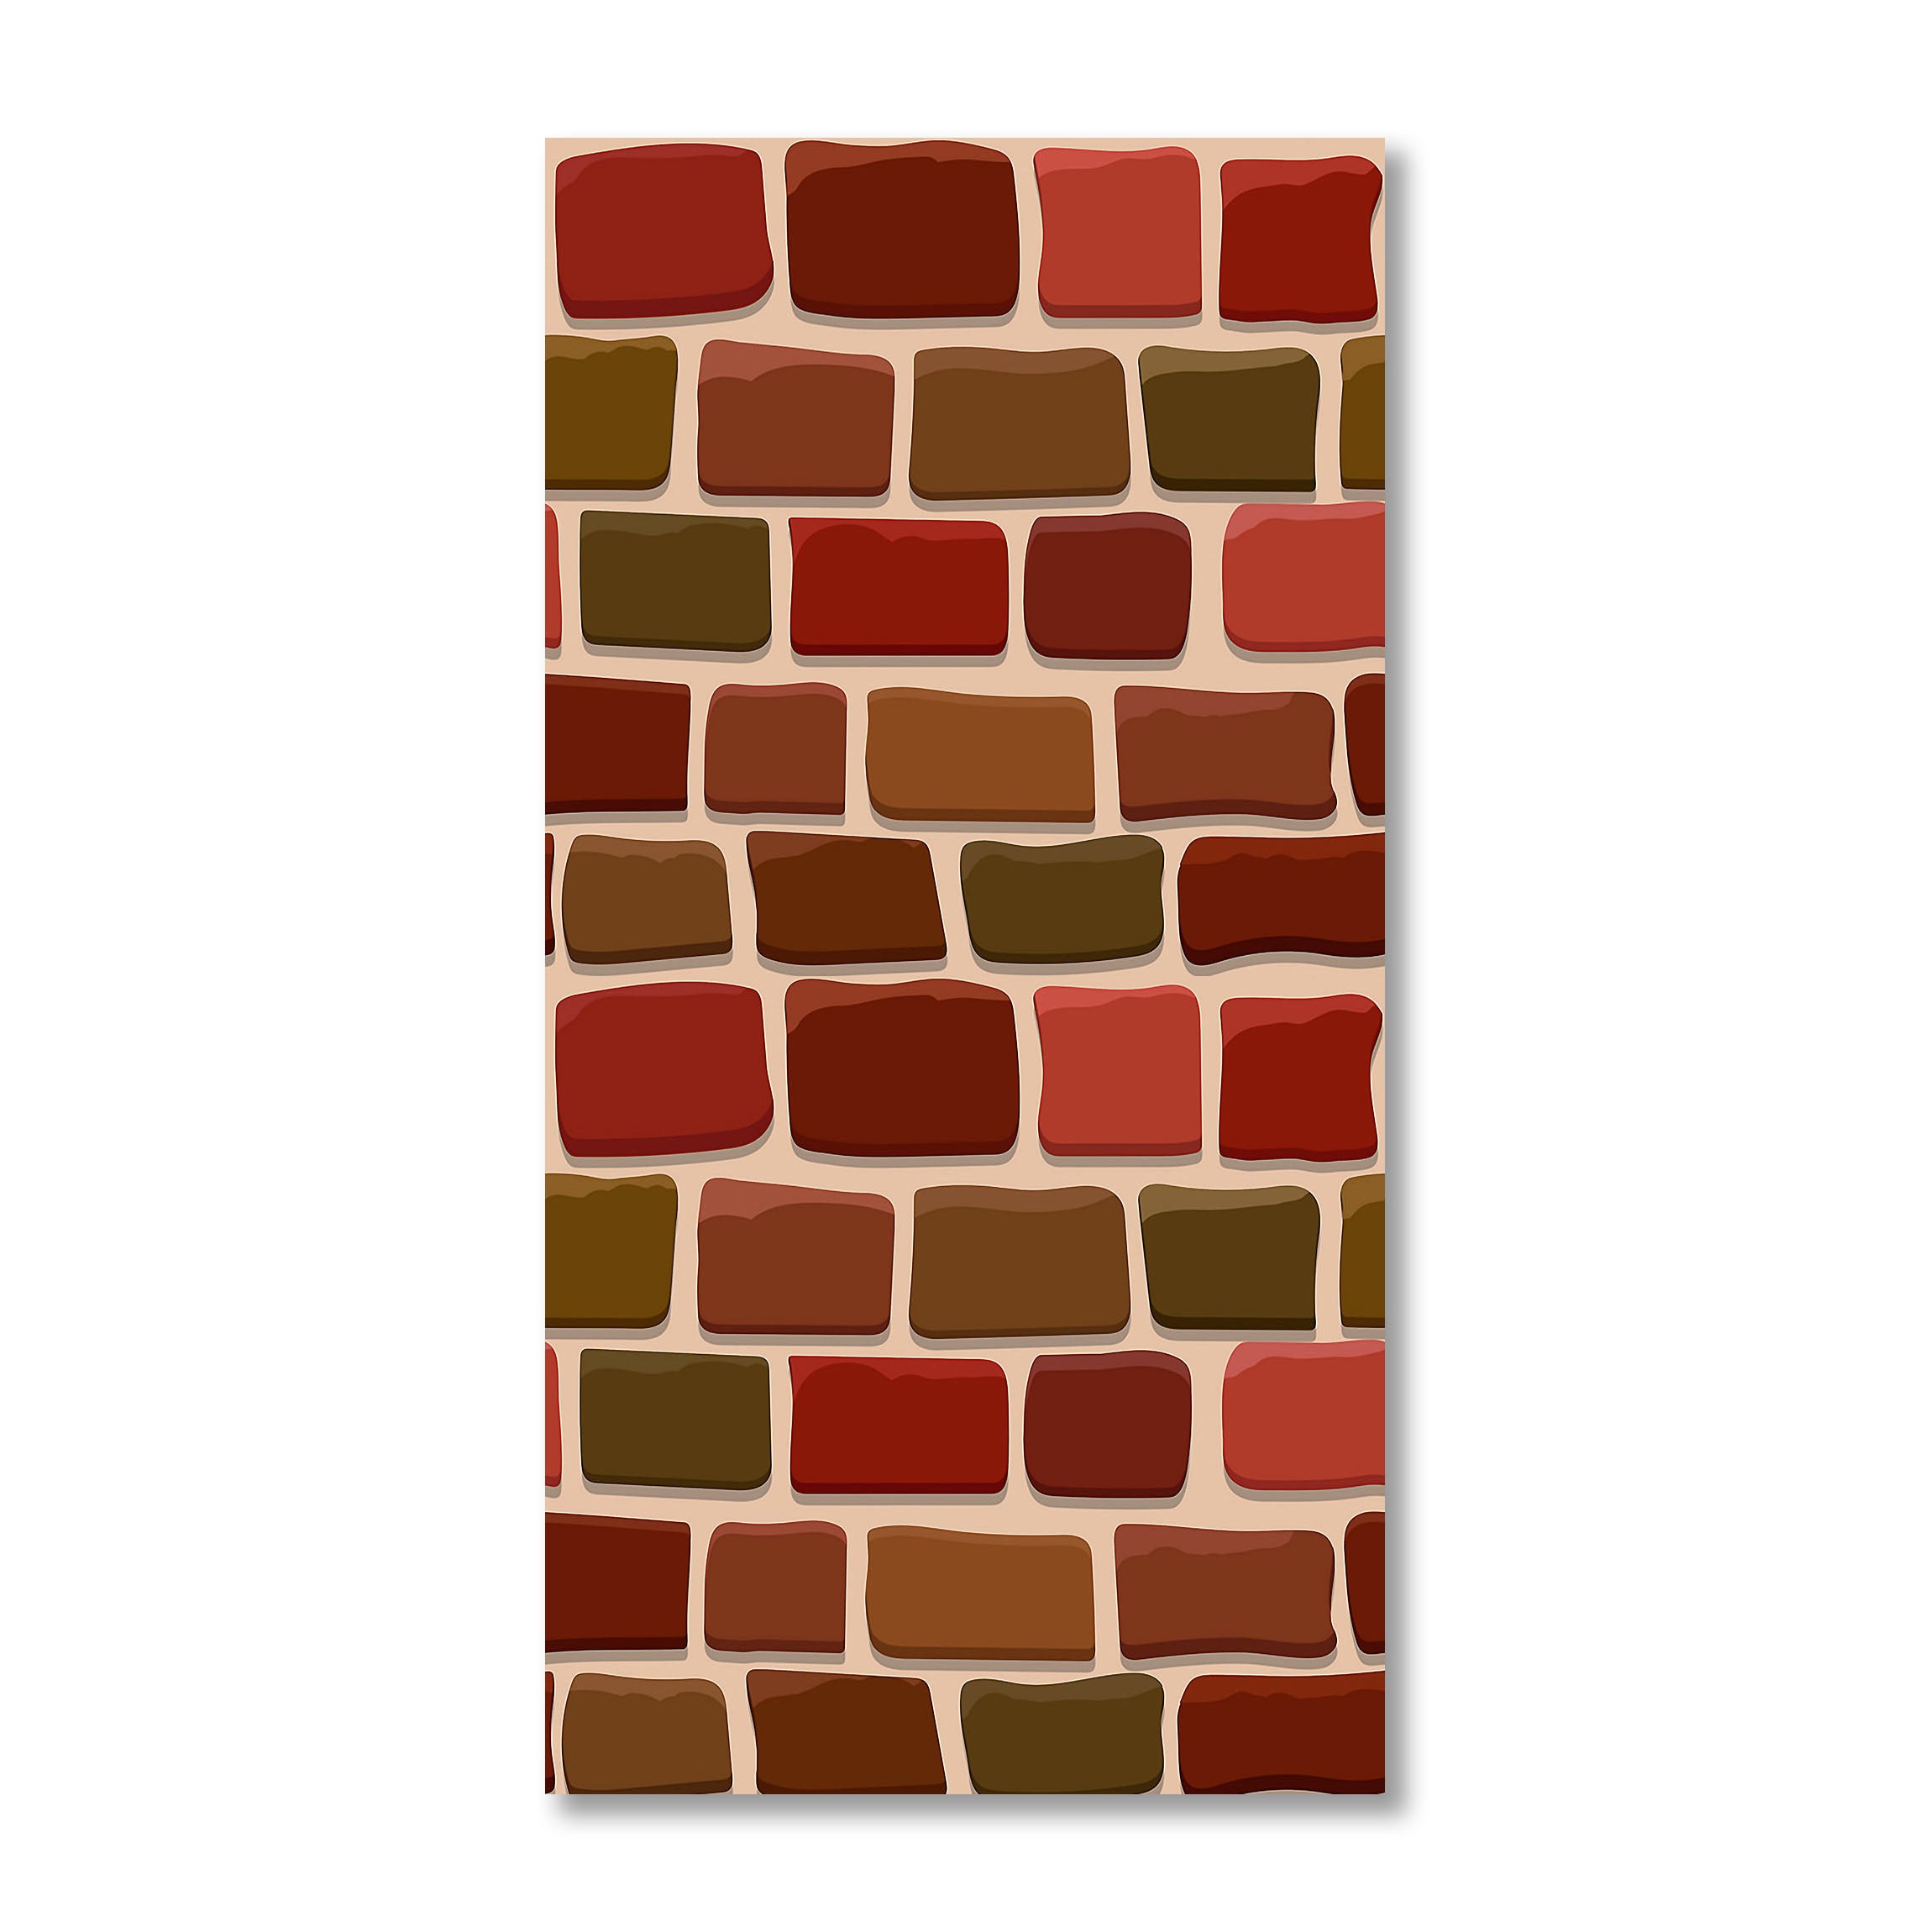 Bricks Texture